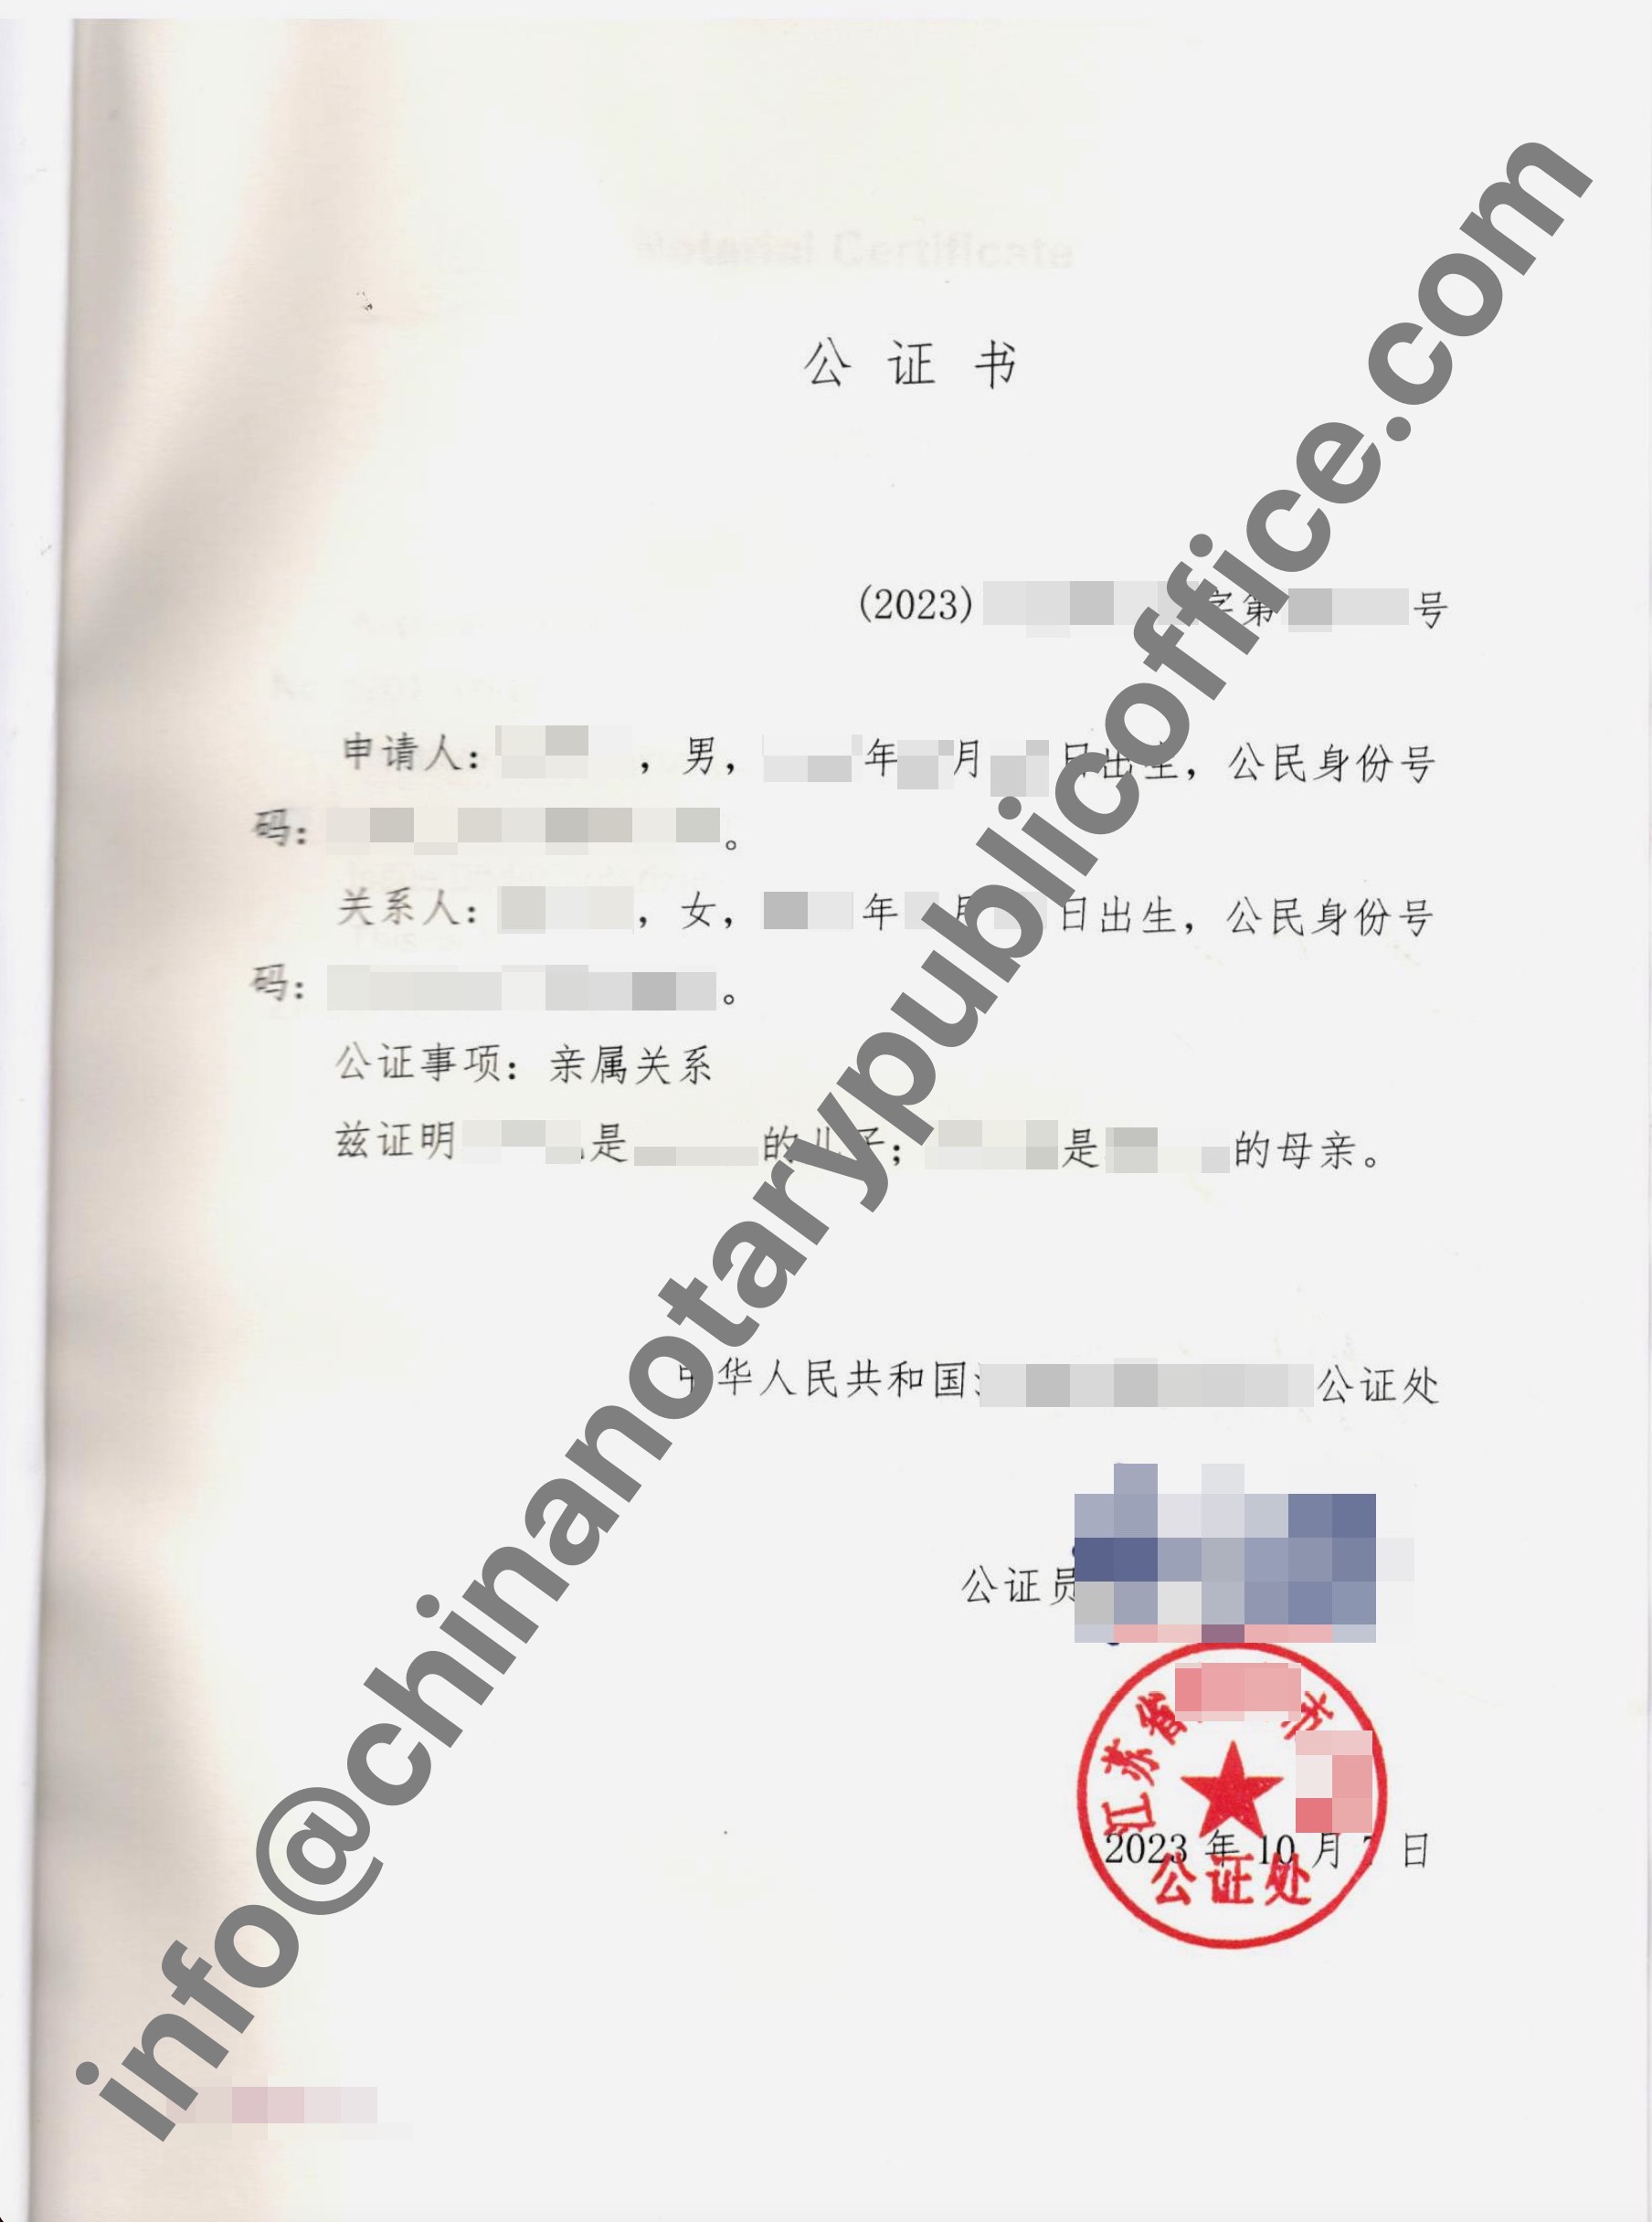 如何办理亲属关系公证书，中国公证处海外服务中心